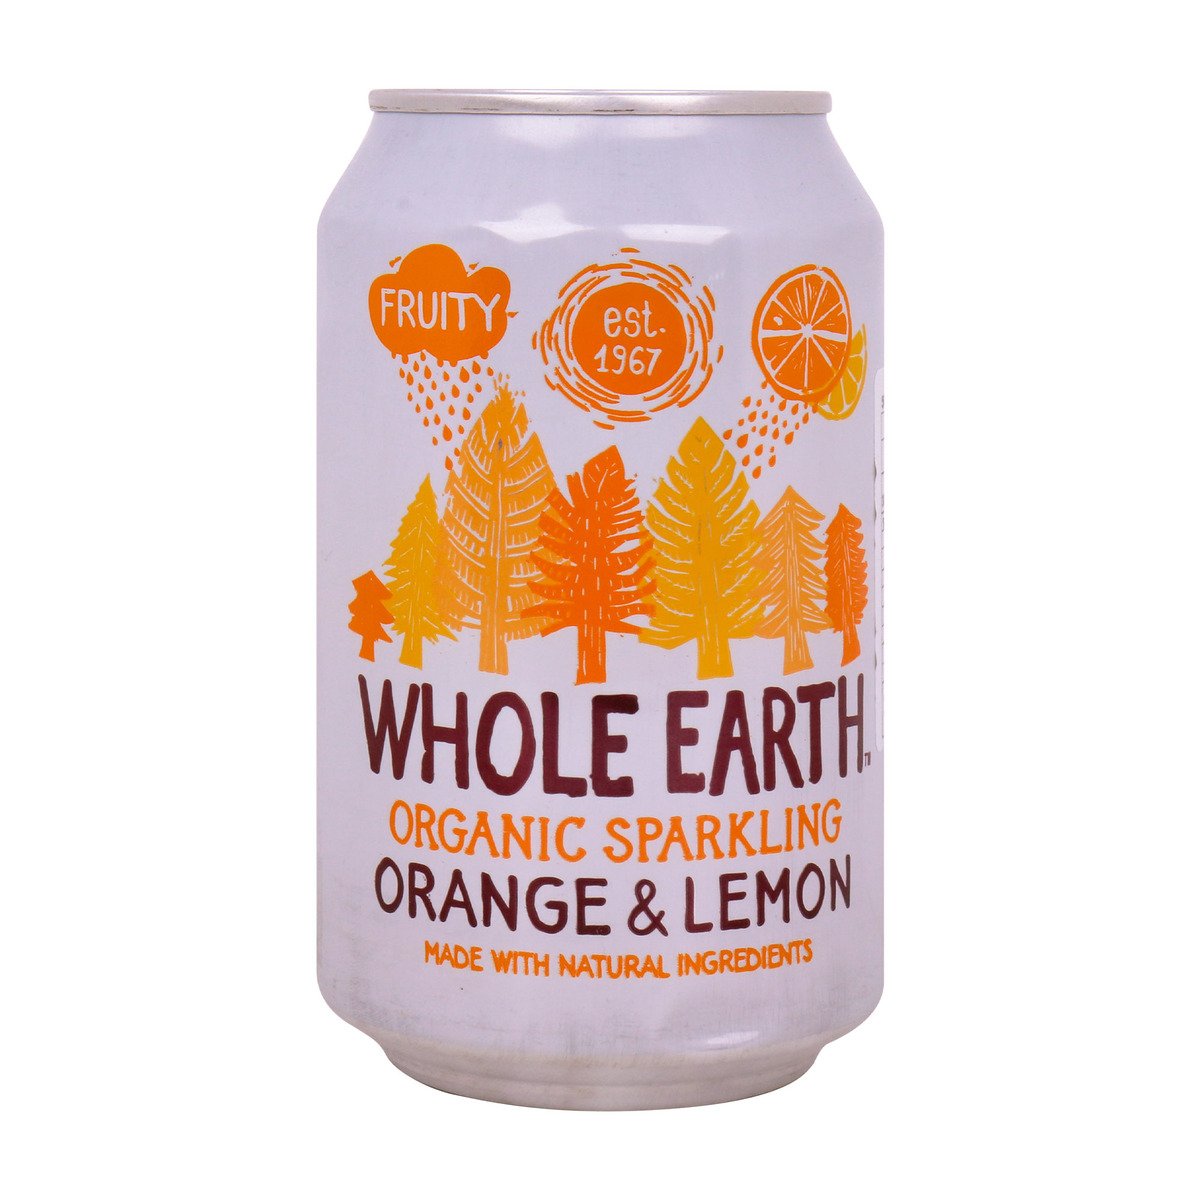 هول ايرث شراب فوار برتقال وليمون عضوي 330 مل